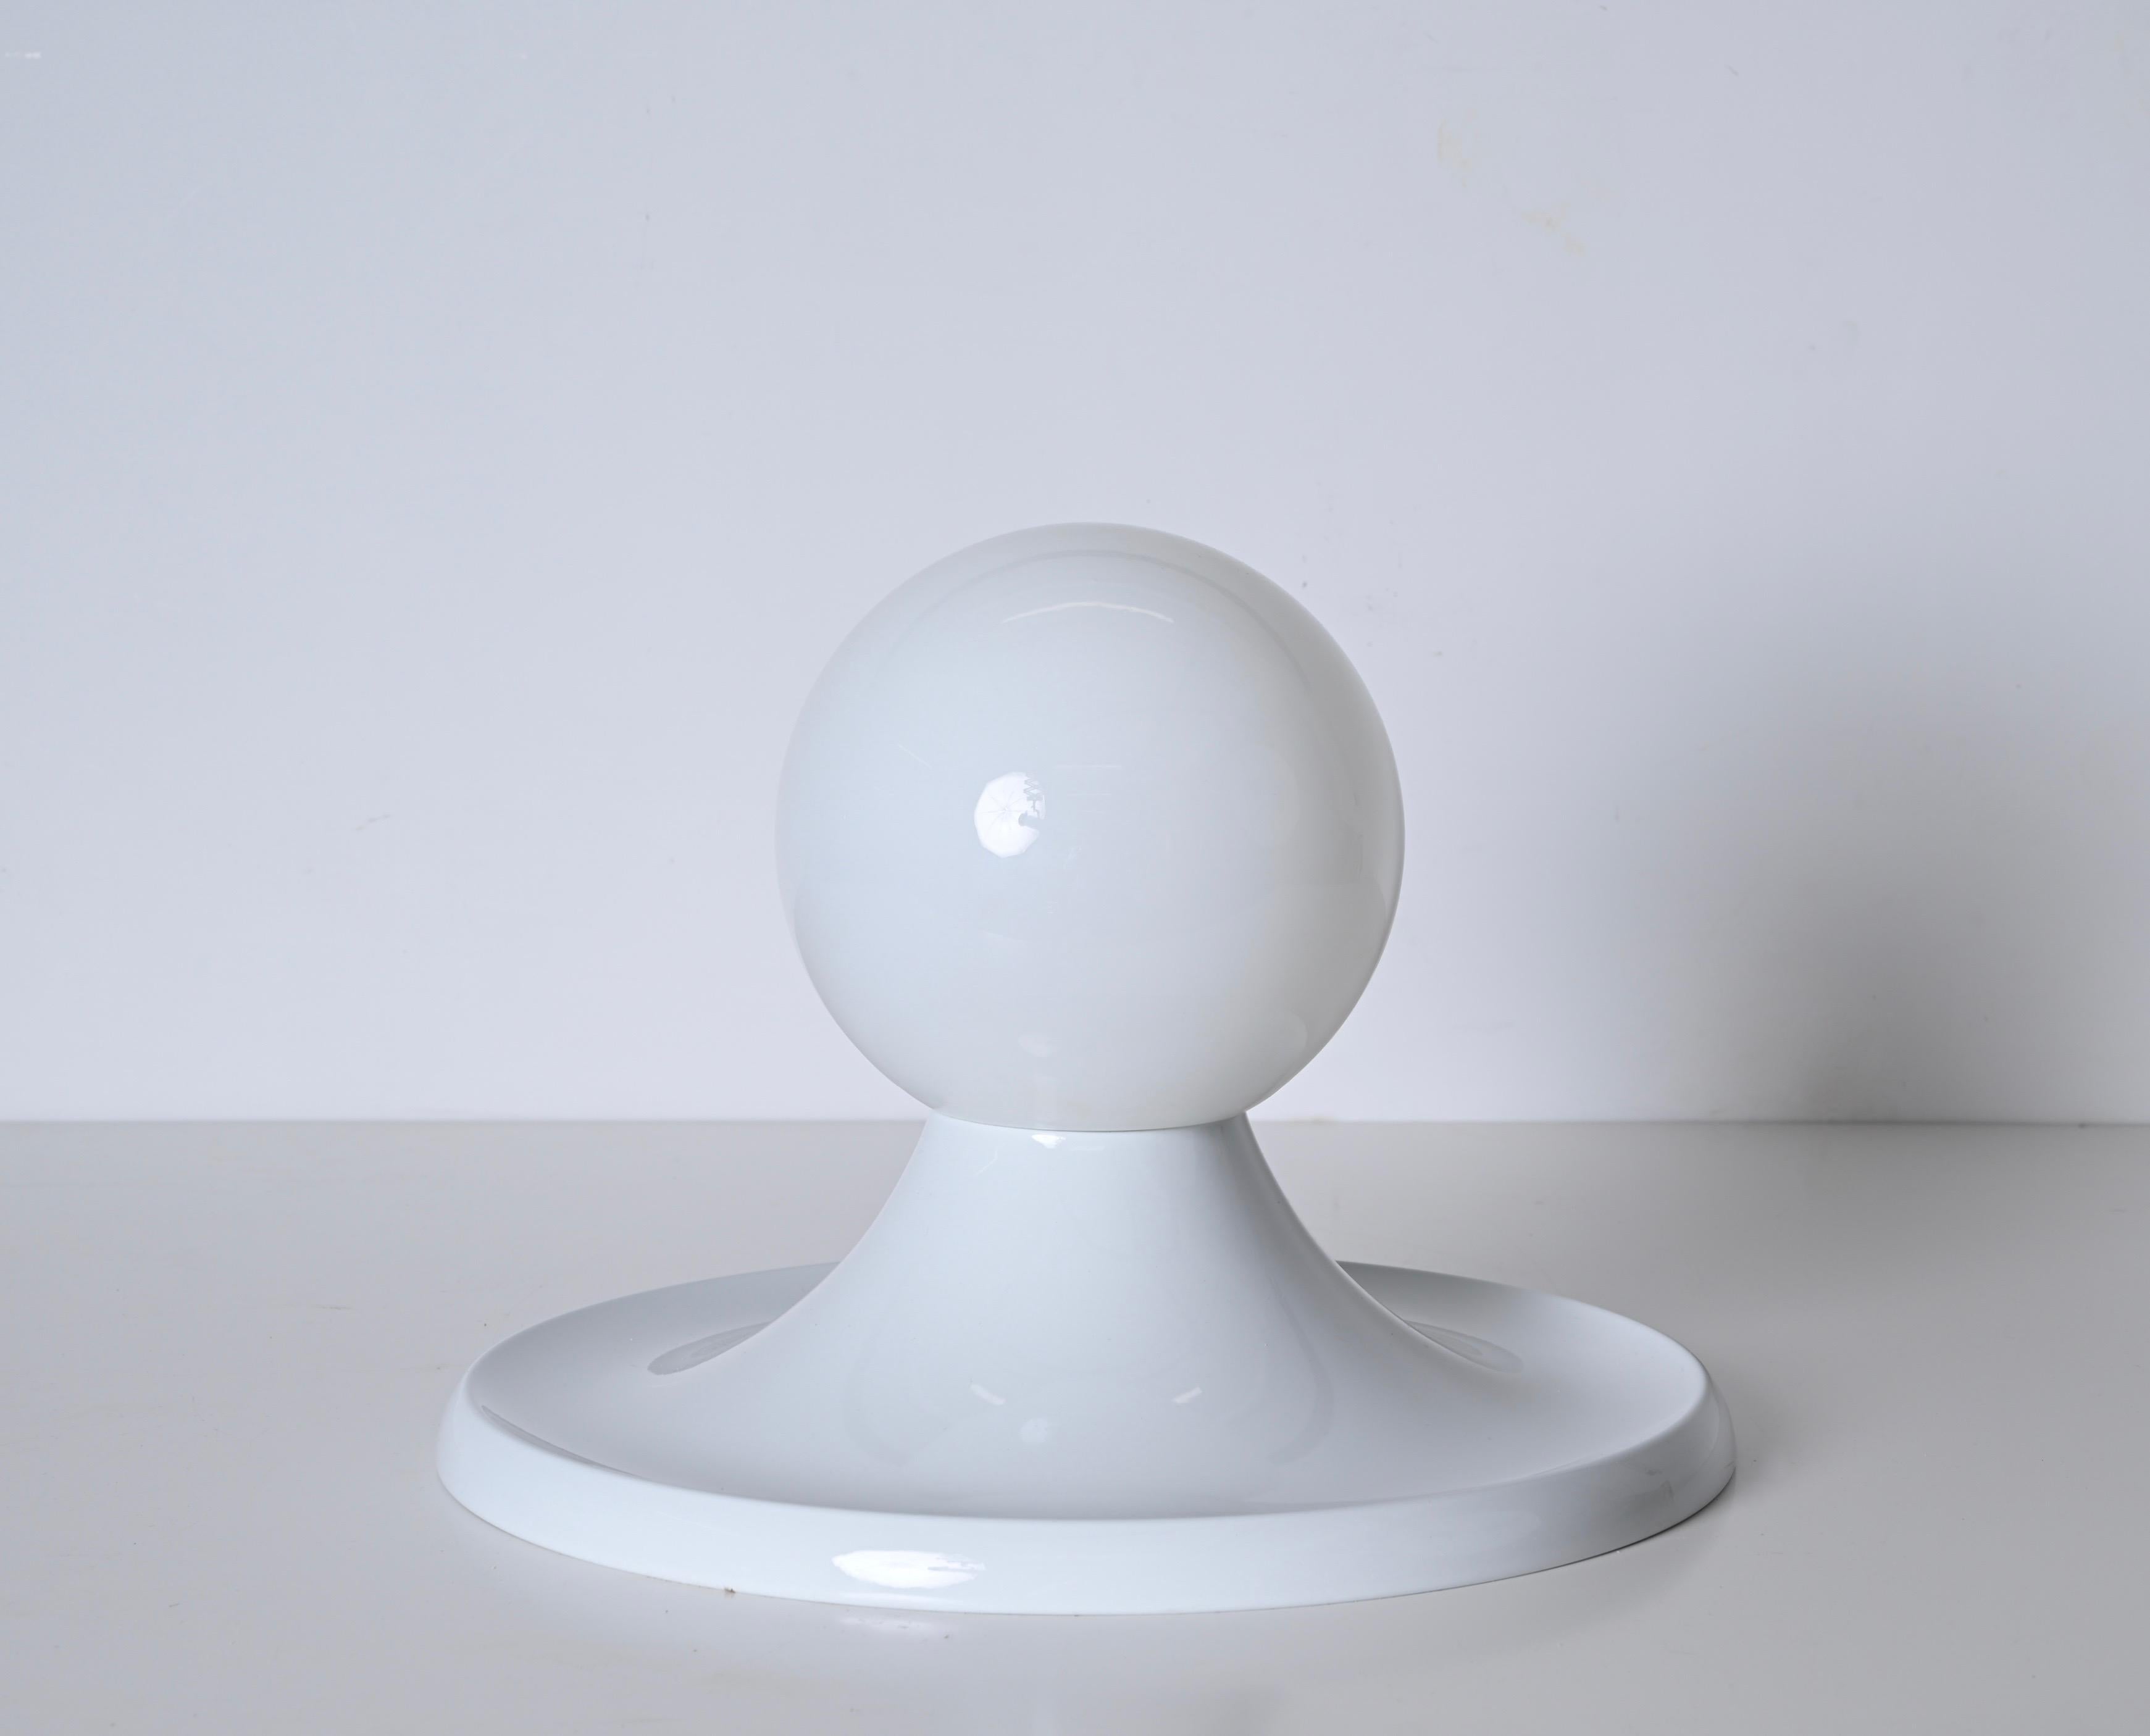 Wunderschönes weißes Licht  Kugel, entworfen von Achille Castiglioni für Flos in Italien in den 1960er Jahren, aus weißem Metall und Opalglas. Diese fantastische Lampe wurde von Castiglioni für Arteluce entworfen und in den 1960er Jahren von Flos in